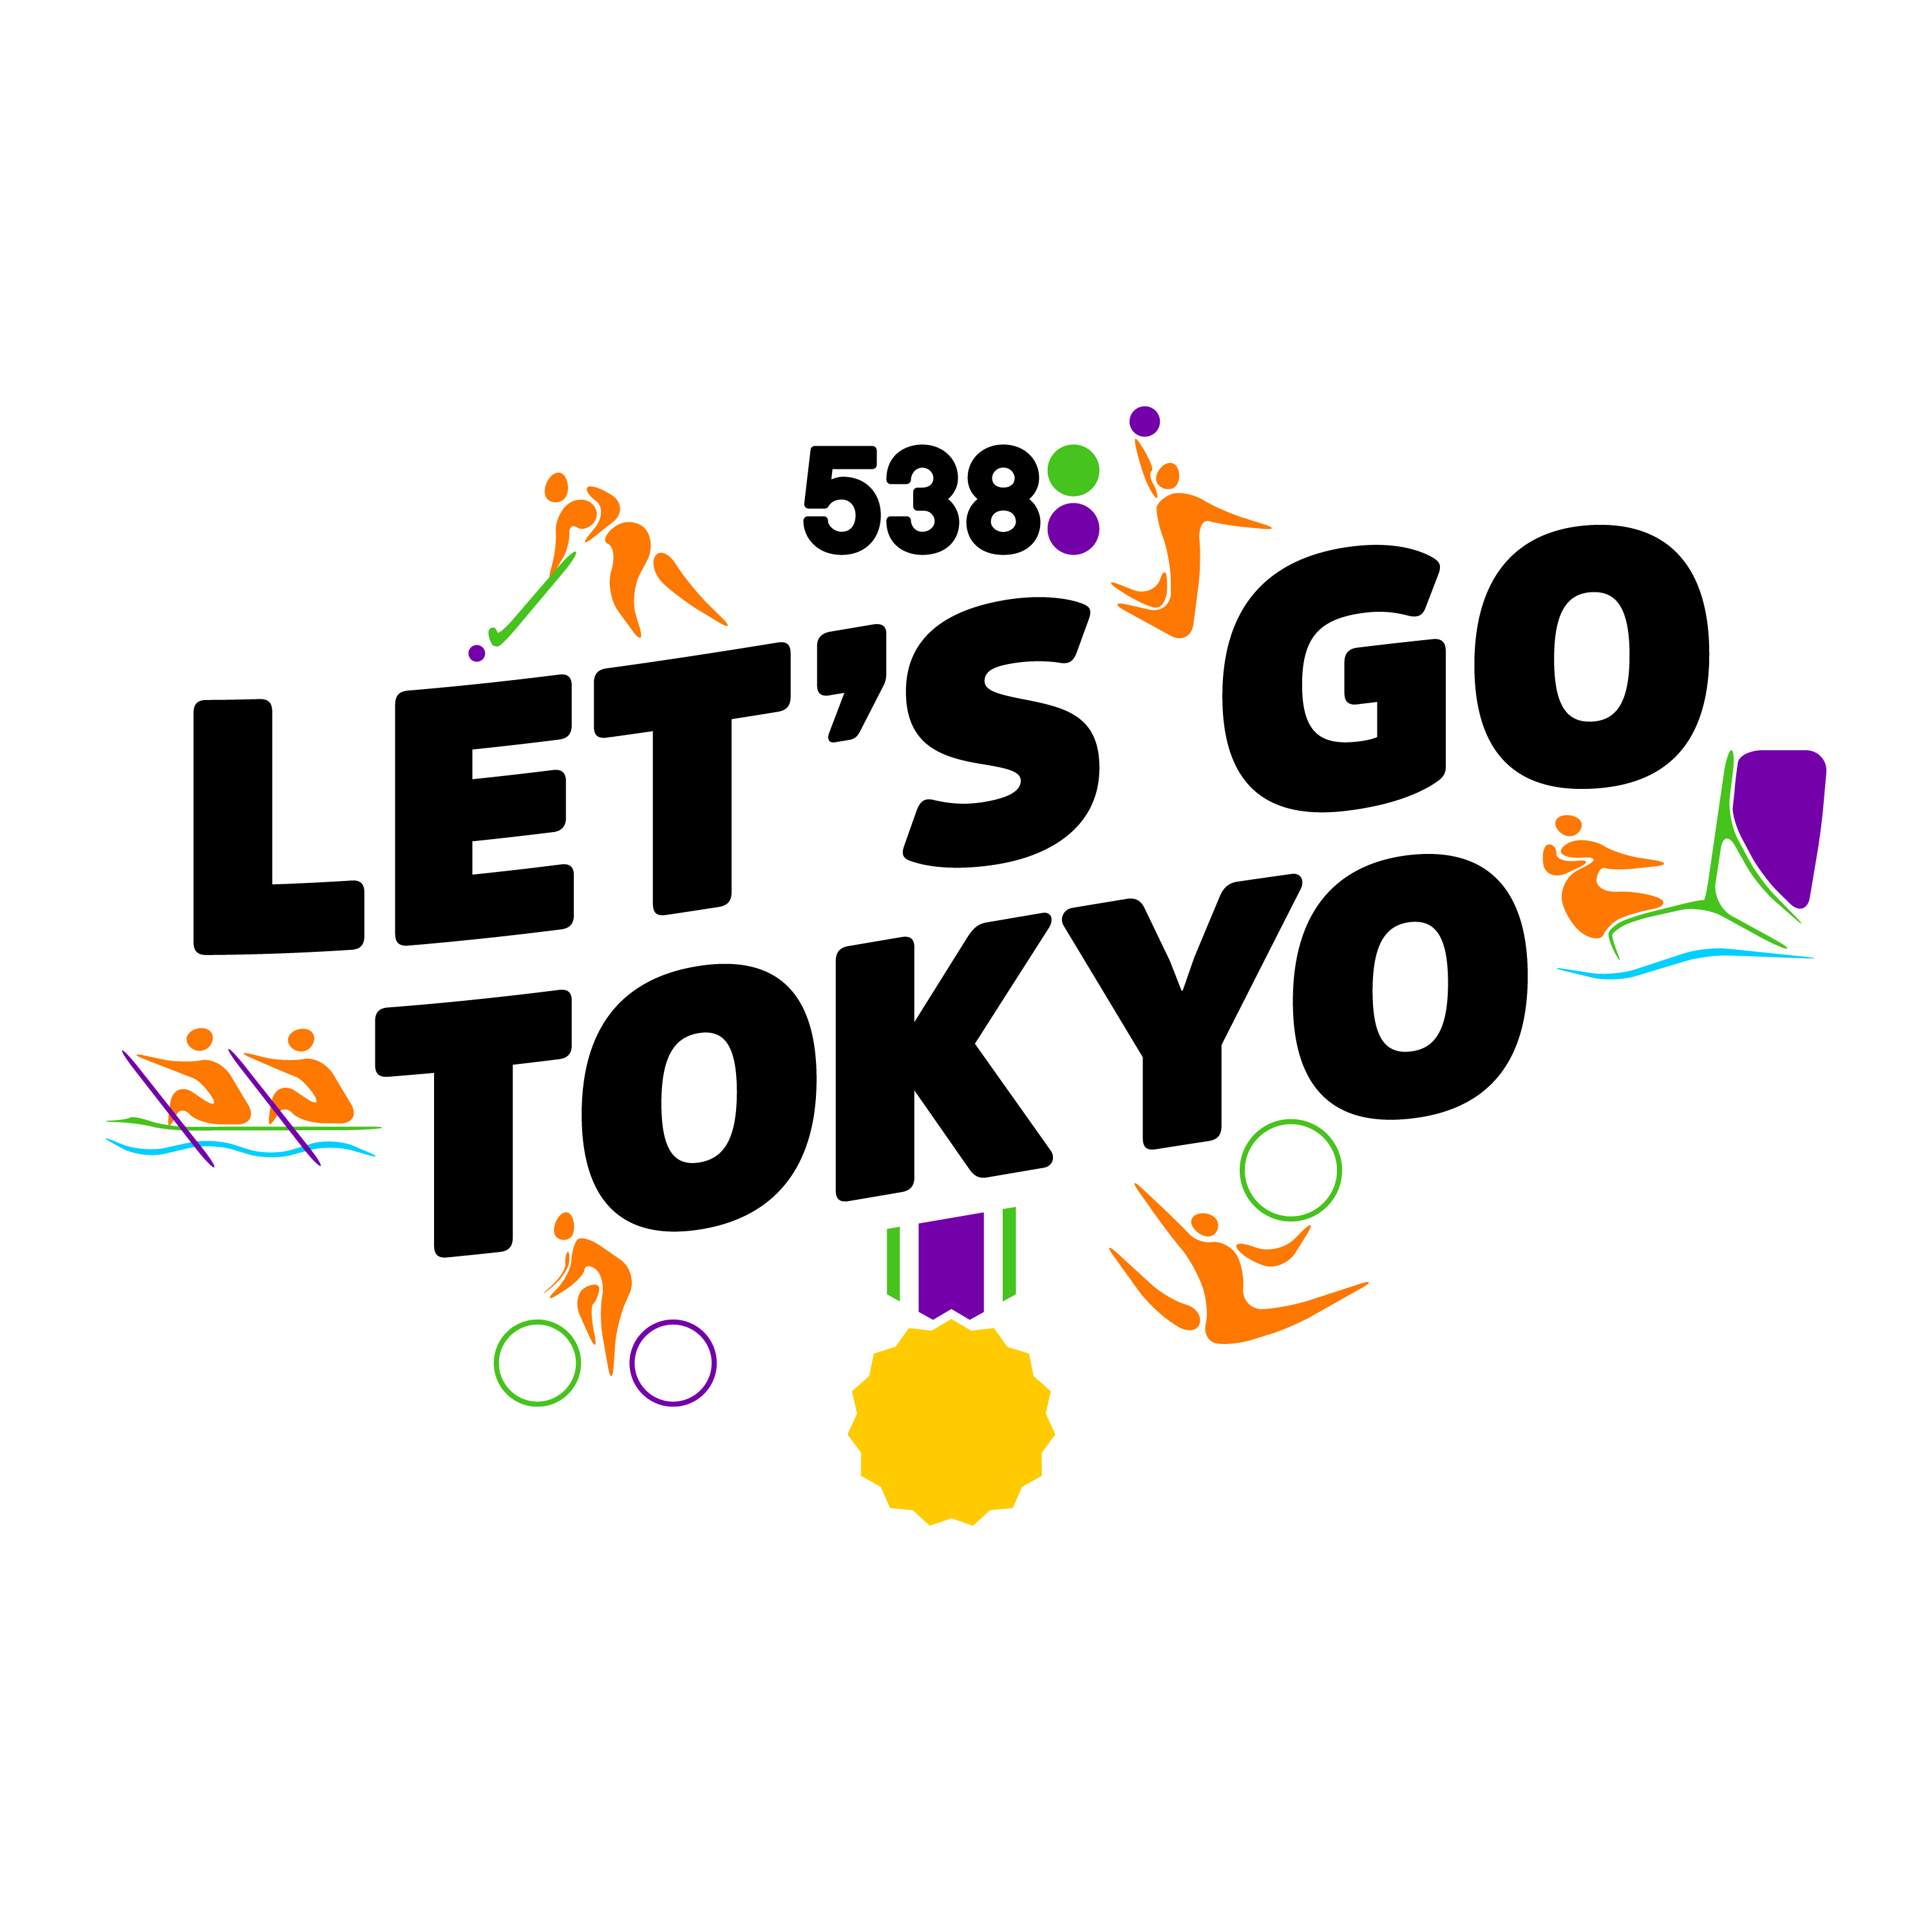 Trailer - Let's Go Tokyo